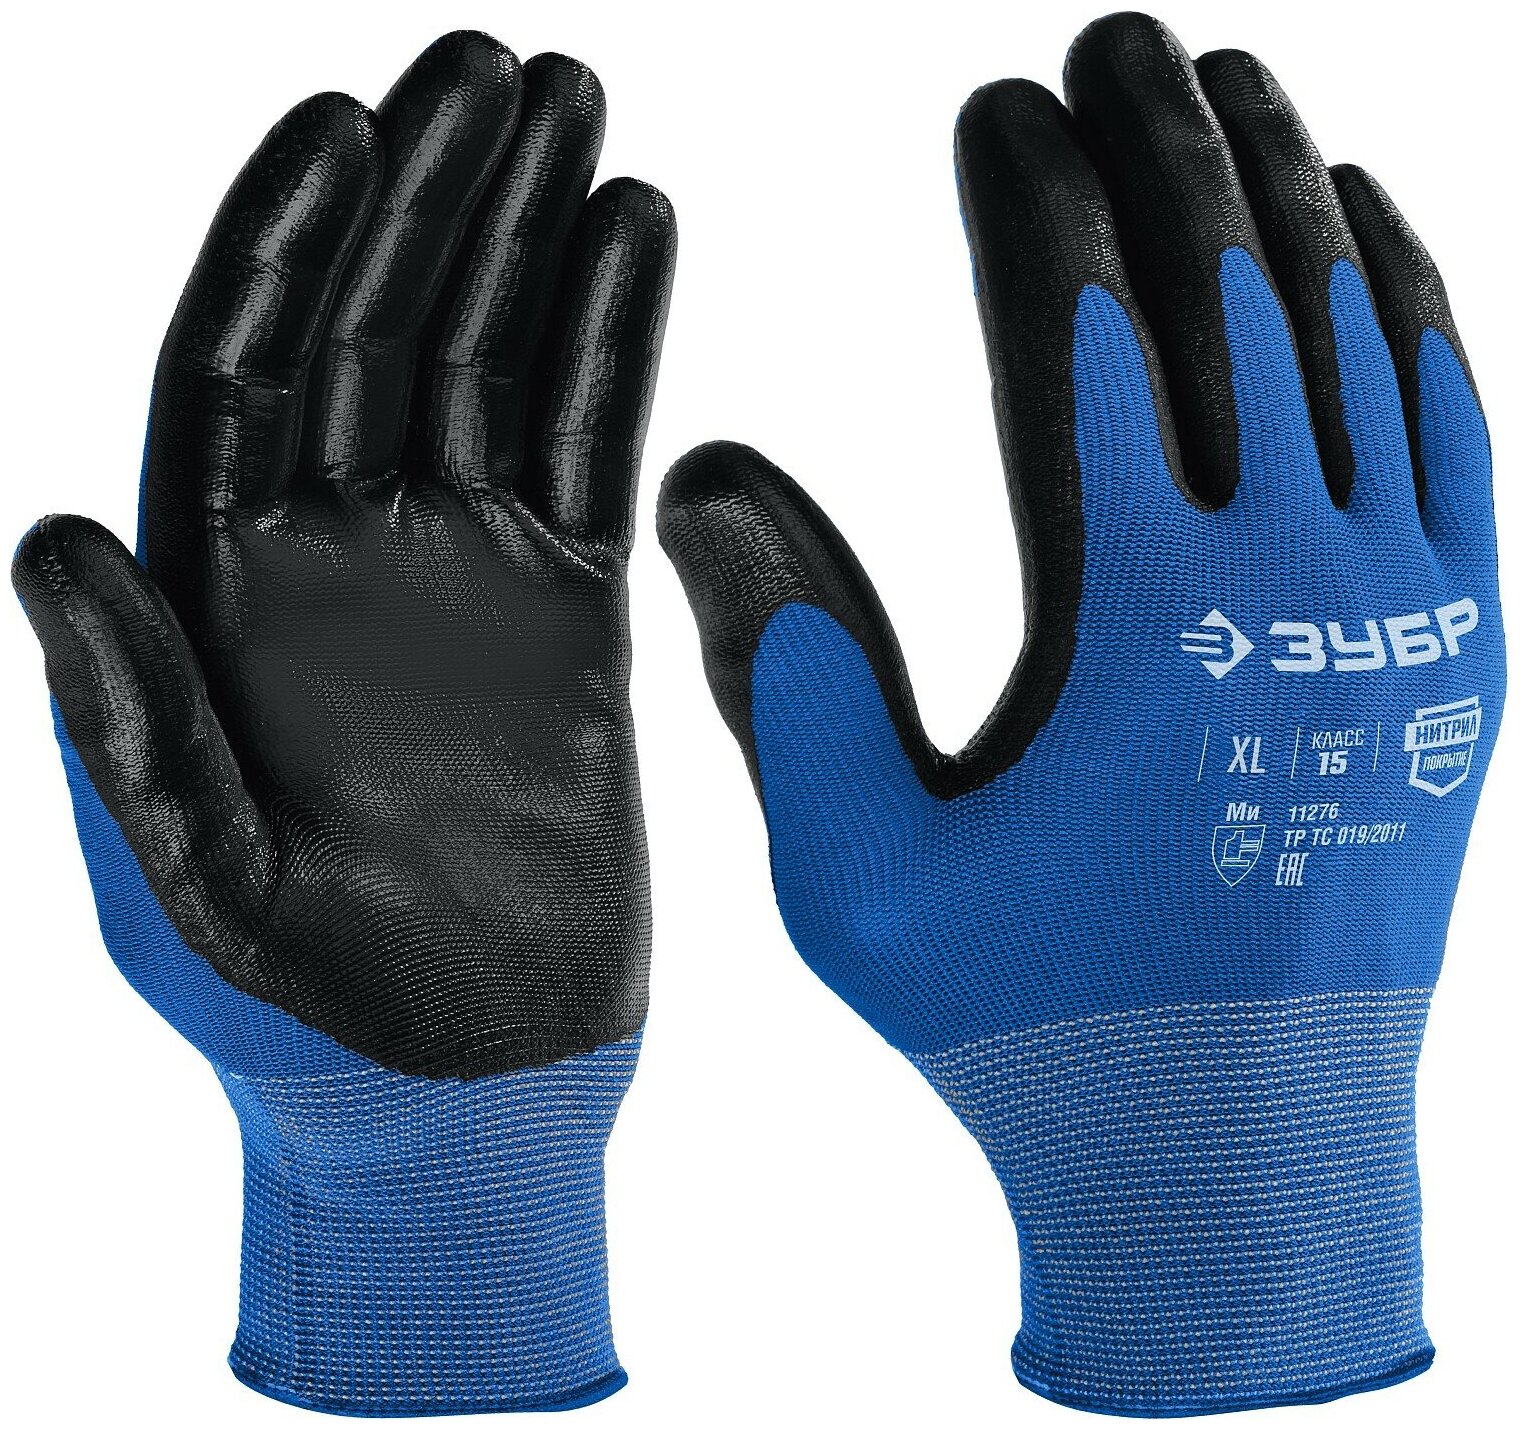 ЗУБР механик, L, тонкое нитриловое покрытие, маслобензостойкие перчатки, Профессионал (11276-L)